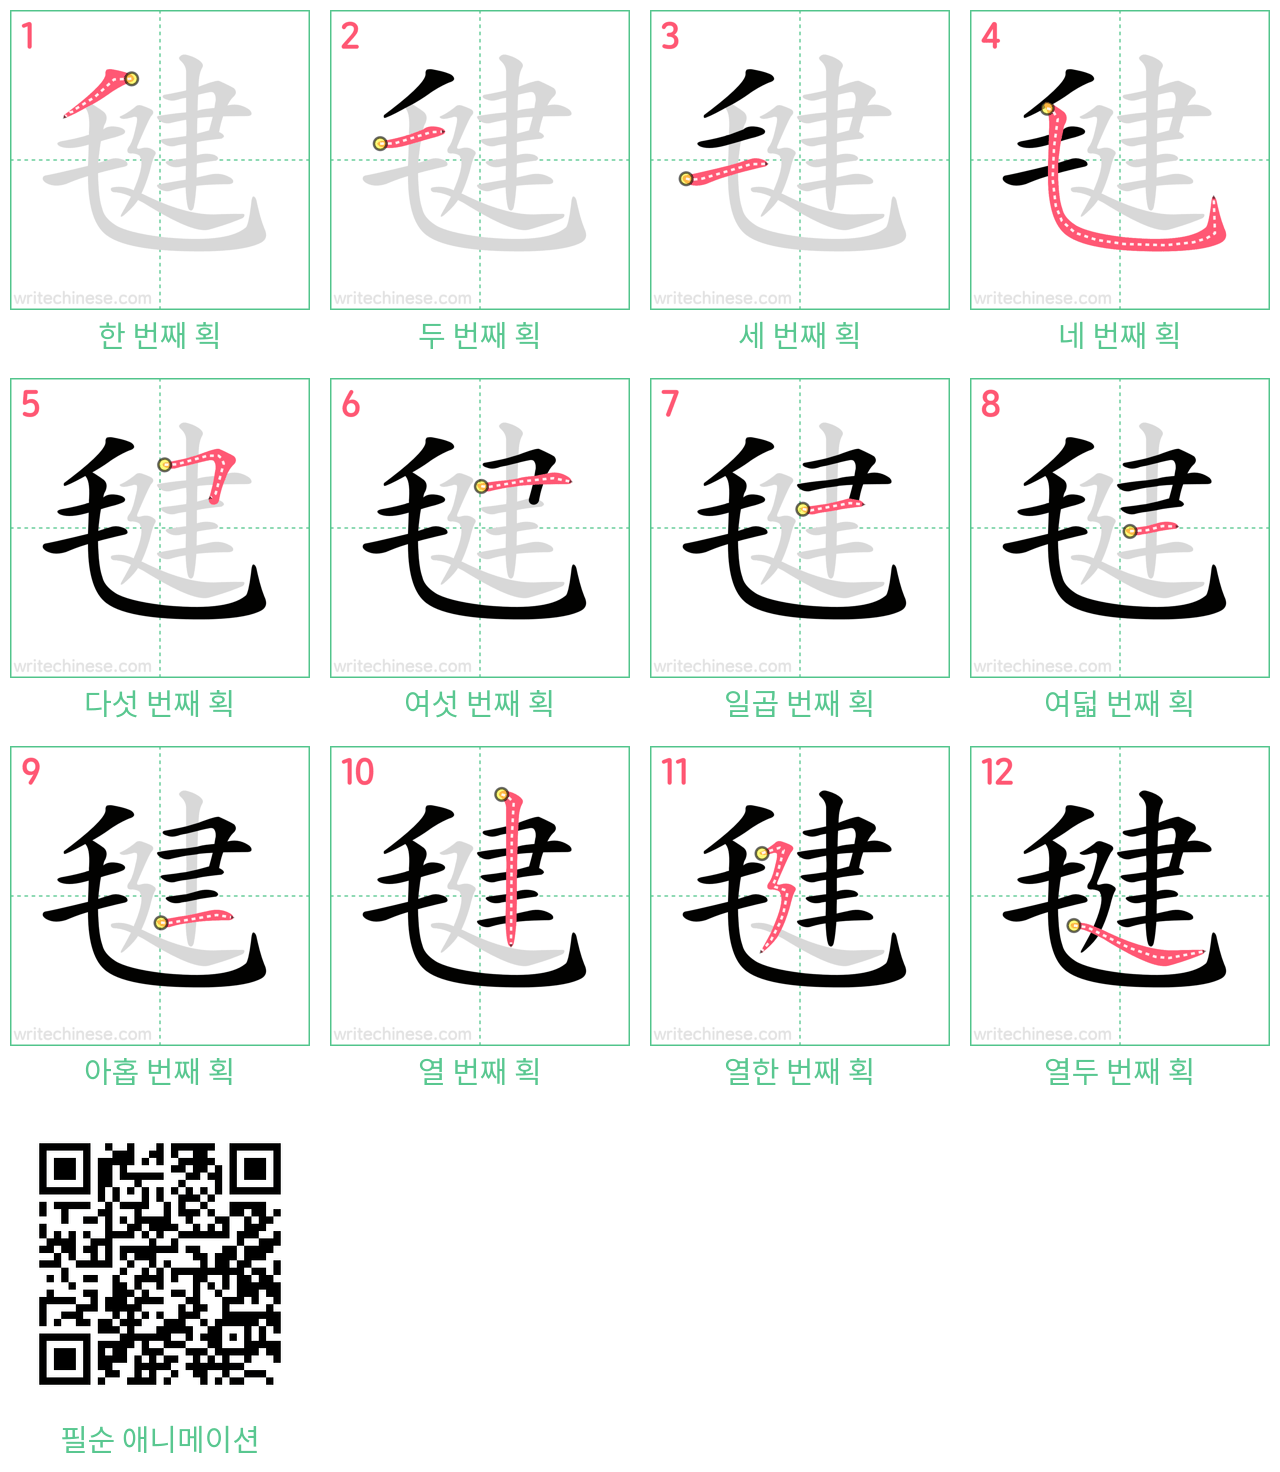 毽 step-by-step stroke order diagrams